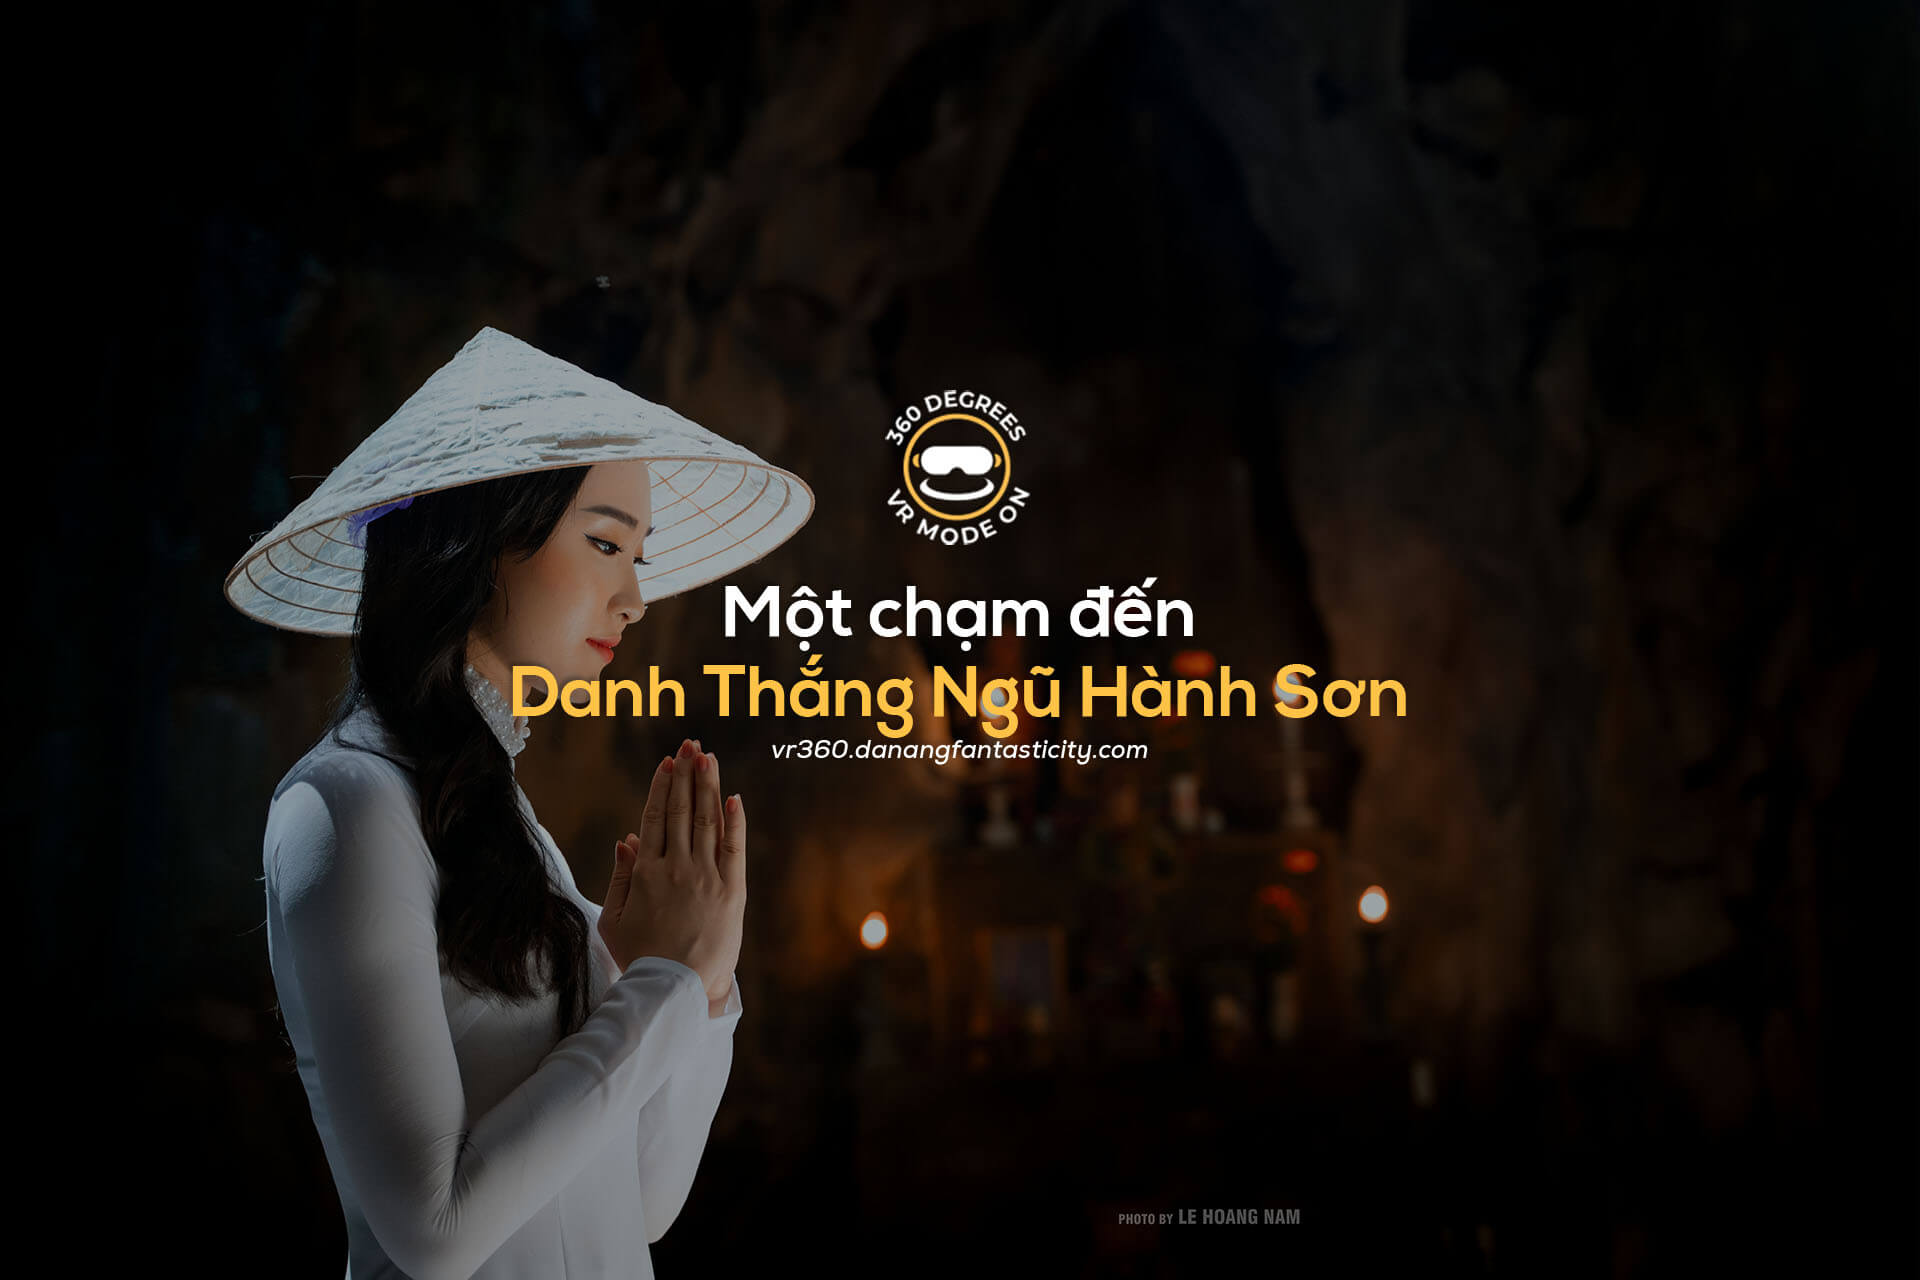 Virtual Danh Thang Ngu Hanh Son Dong Huyen Khong Vr360